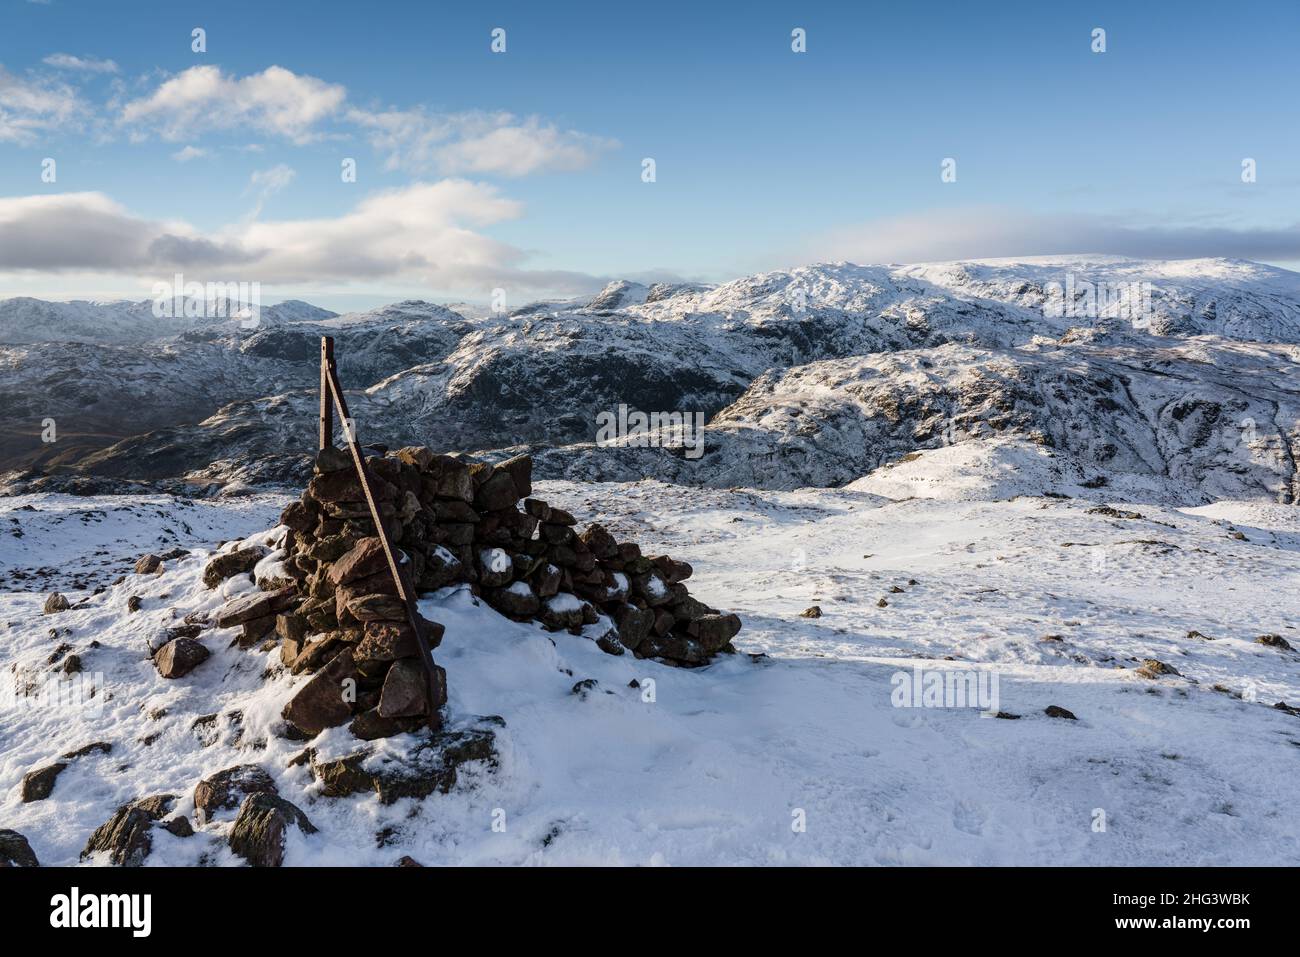 Escena de nieve de invierno de la cumbre de Steel Fell, distrito central de los lagos, Cumbria, Inglaterra, Foto de stock